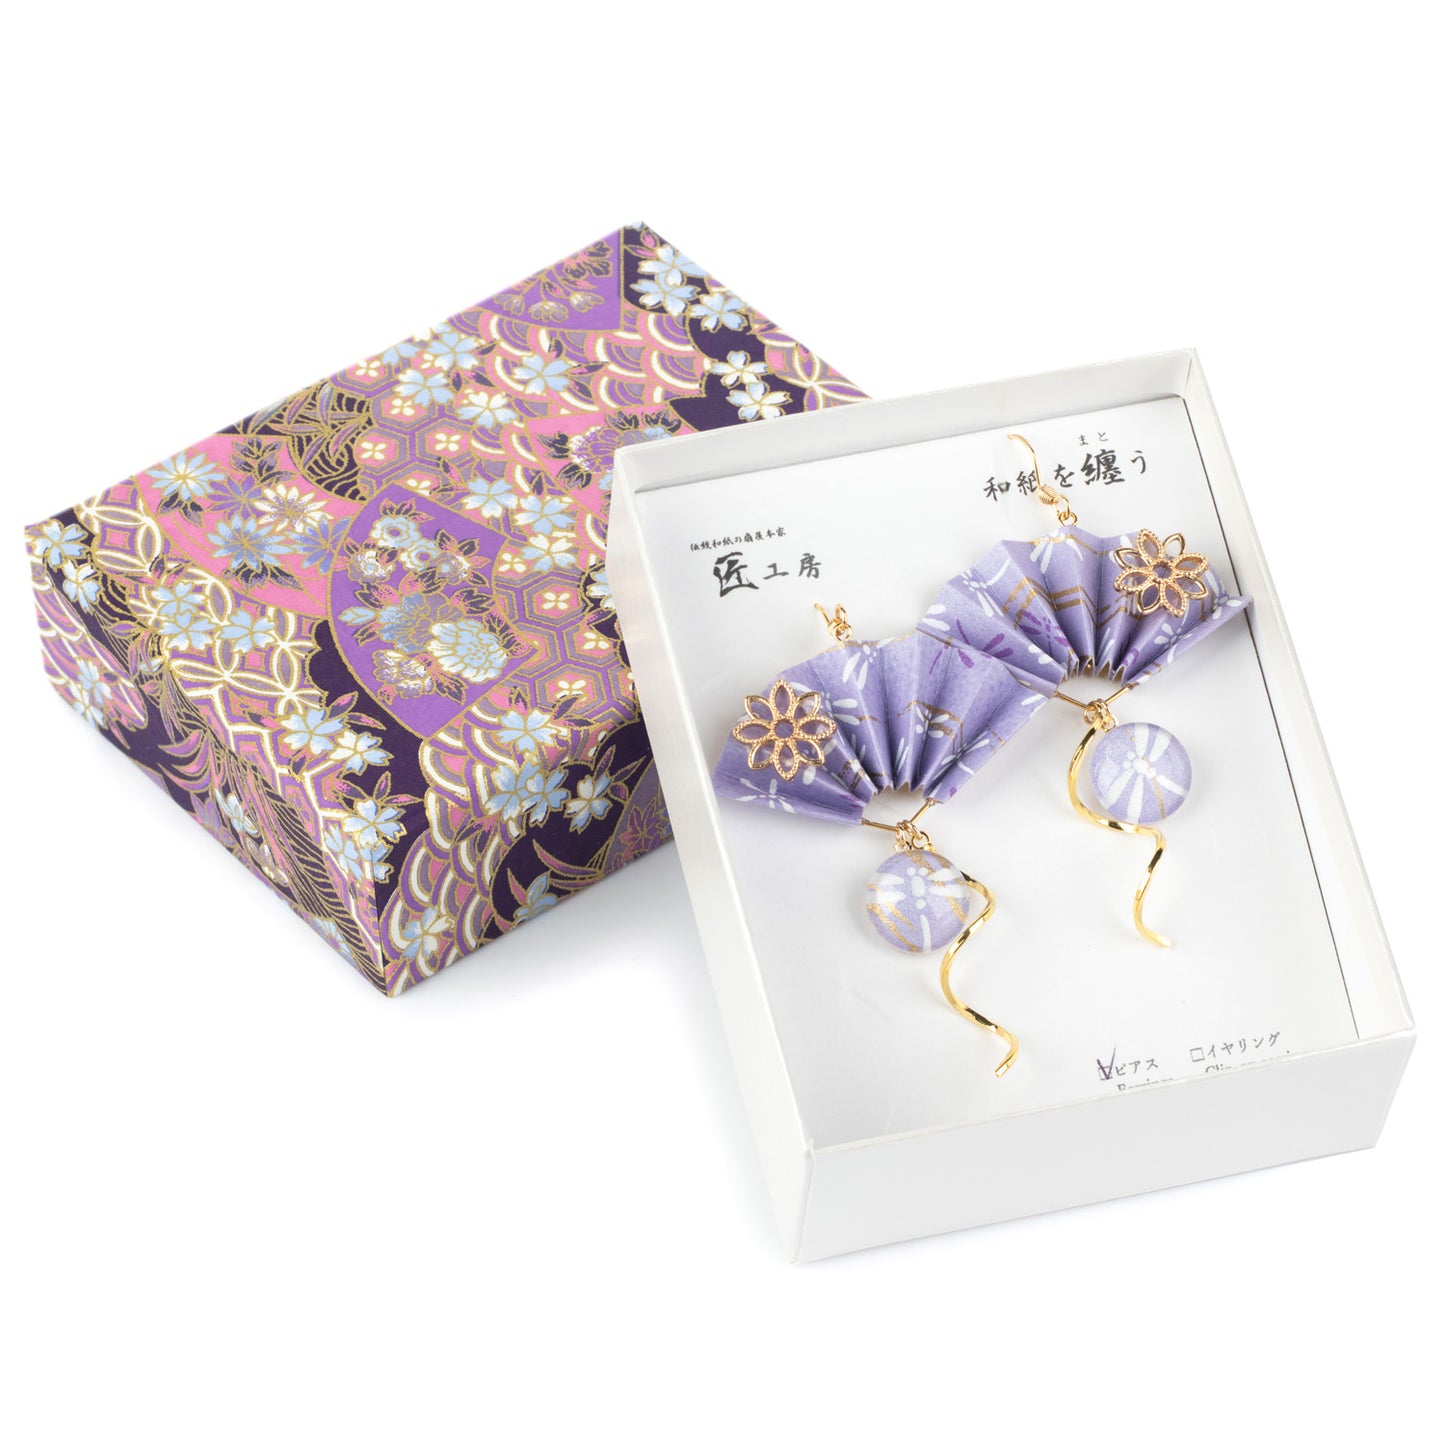 Wagokoro Purple and Gold Fan Japanese Earrings in Gift Box